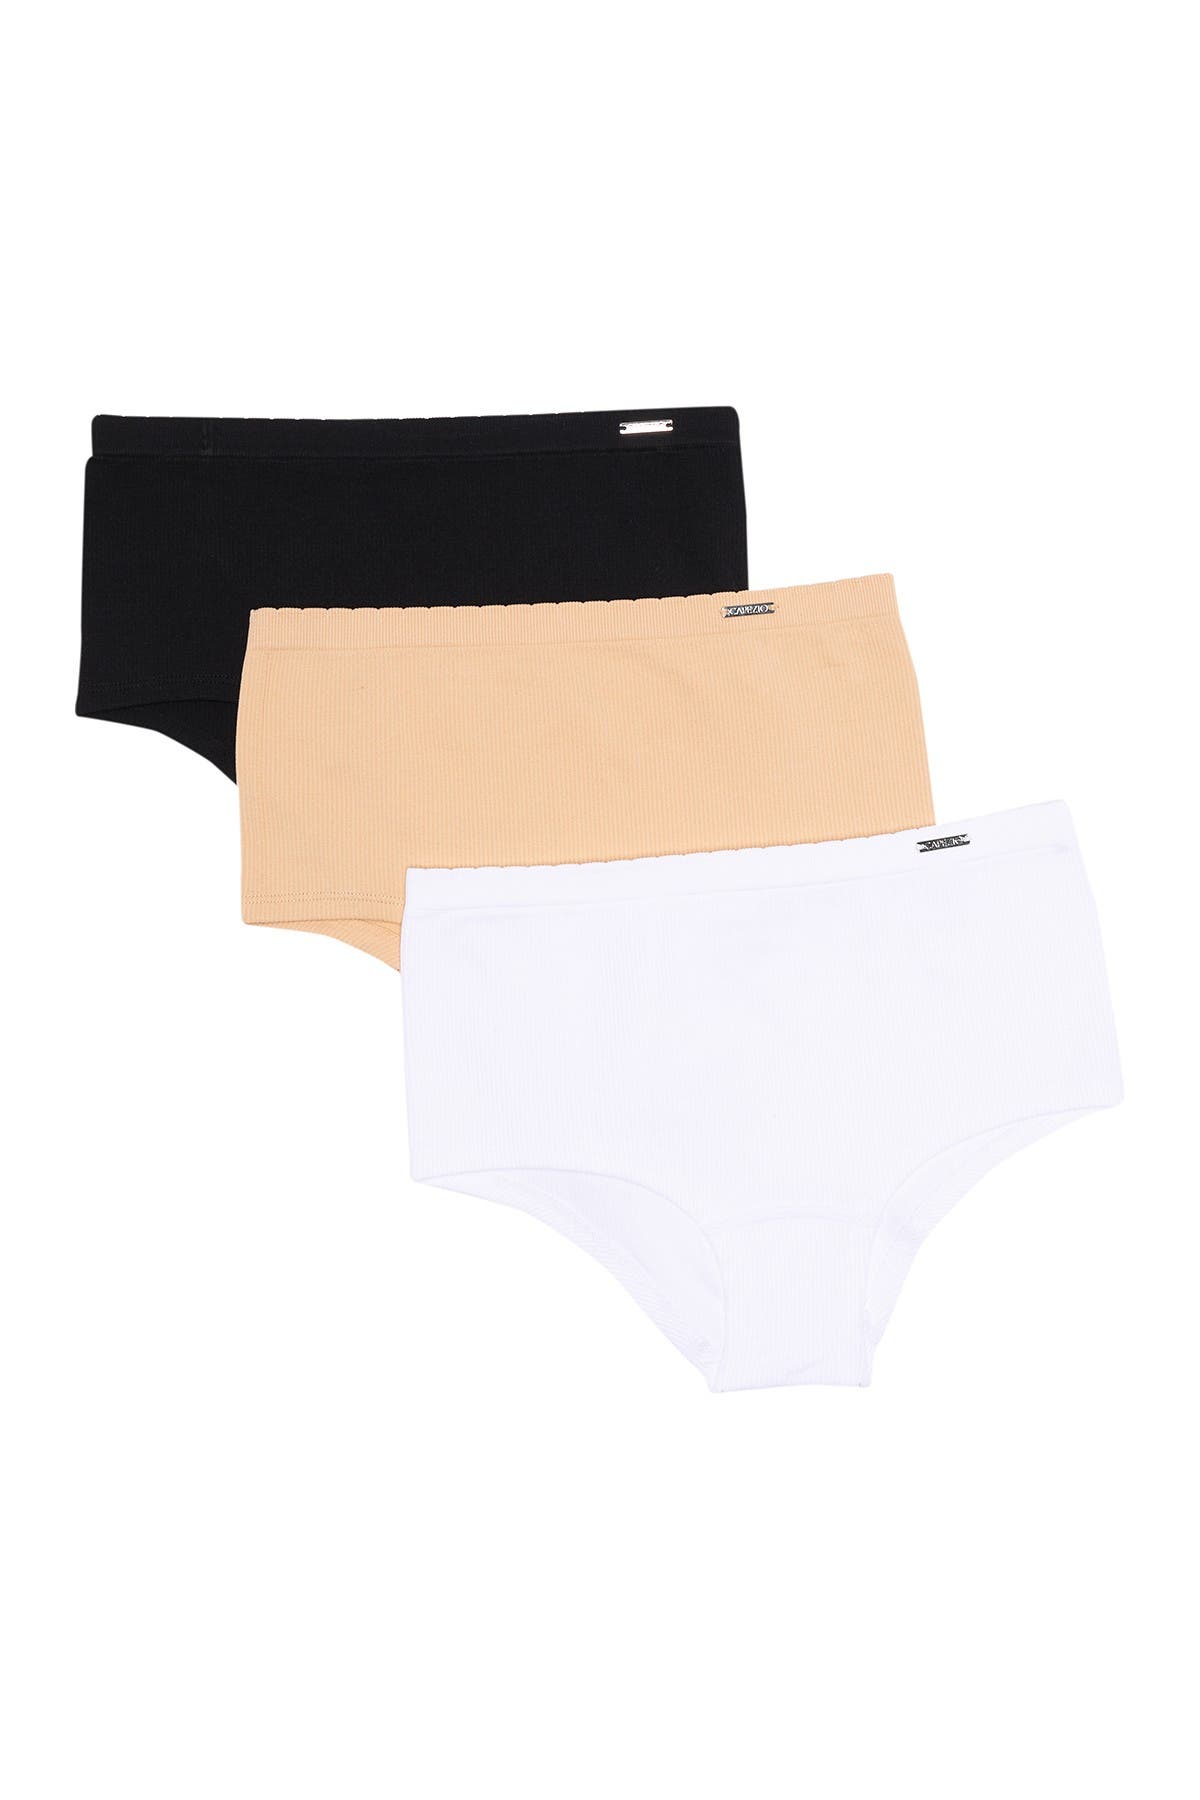 Panties Pack of 6 Just Love Seamless Panties for Girls Panties Clothing ...